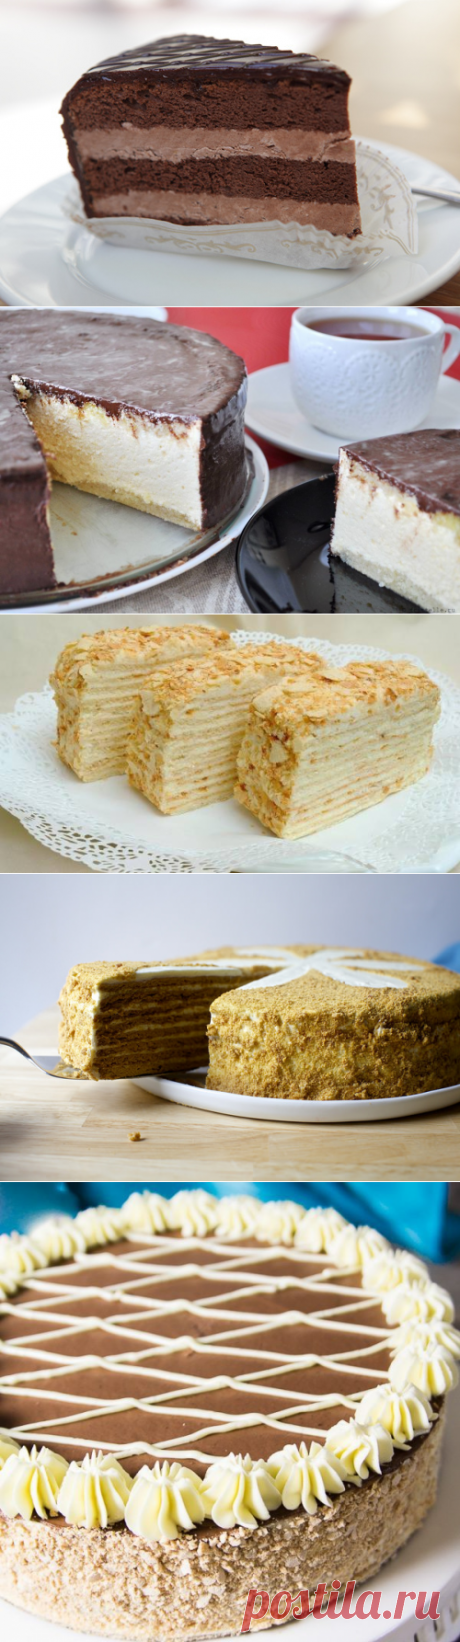 Вот рецепты всех 5 самых легендарных советских тортов. Ничего лучше нет до сих пор!